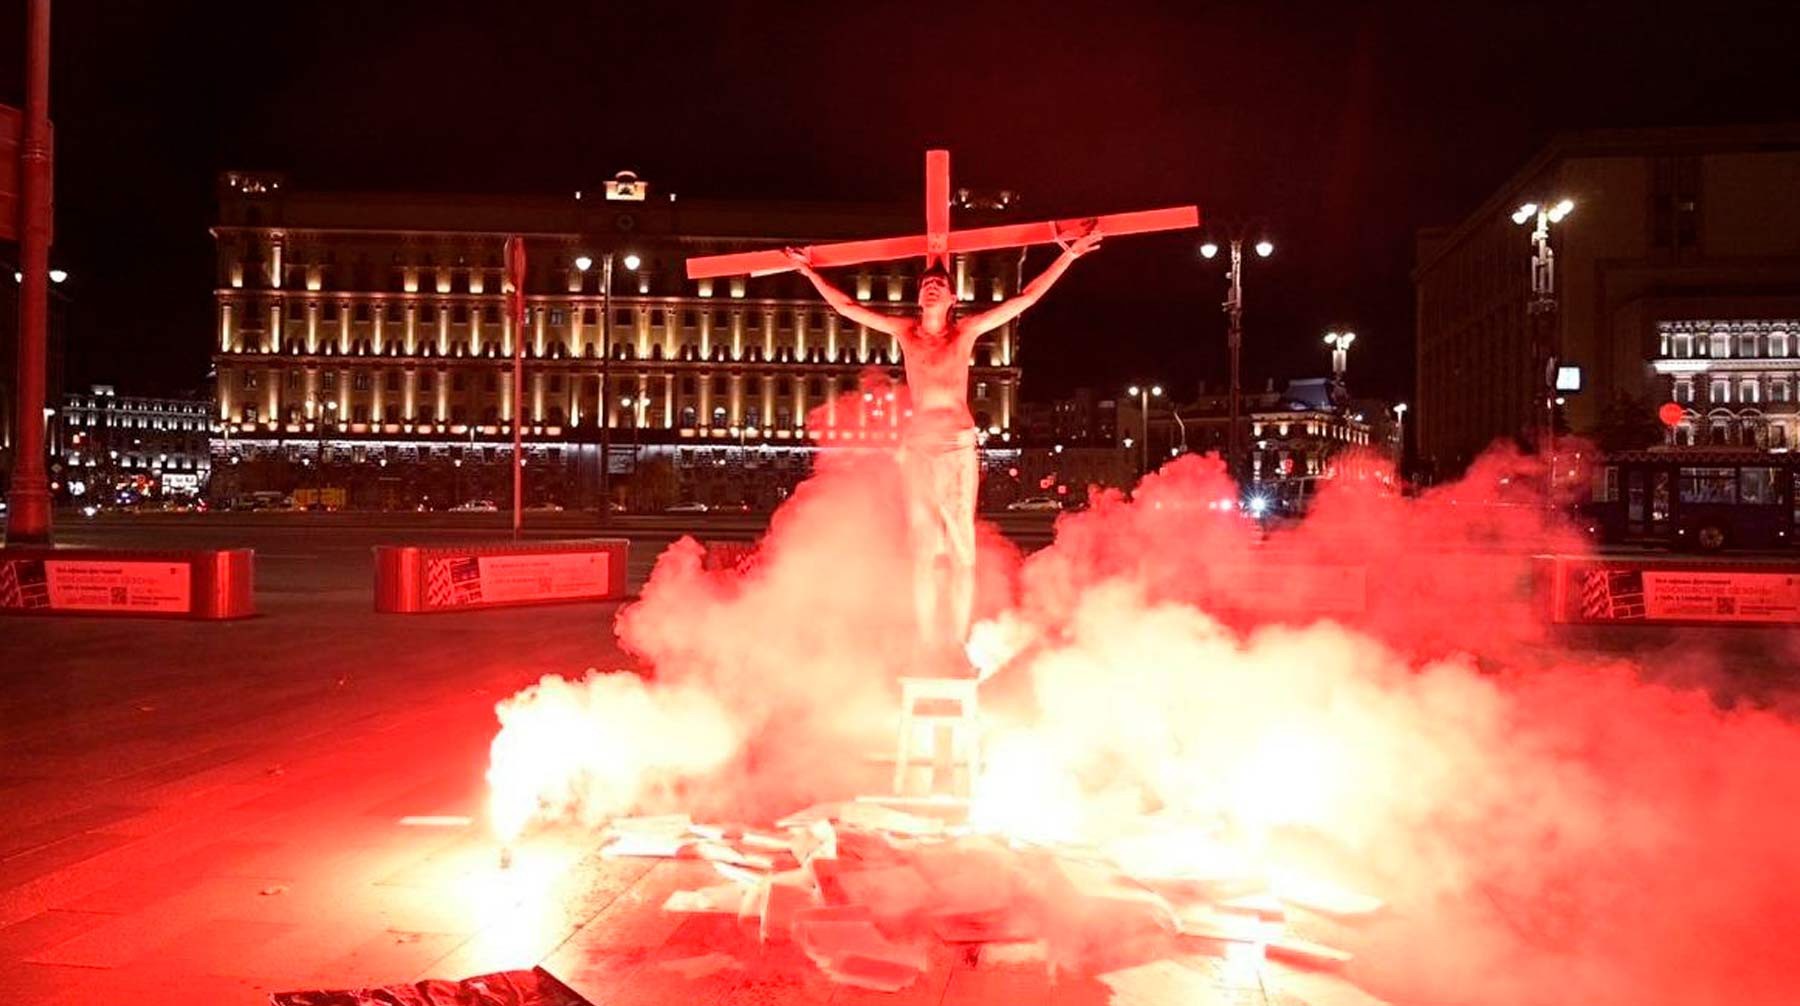 Dailystorm - Кураев: Акция с Христом и горящим крестом на Лубянке — это успех христианской миссии